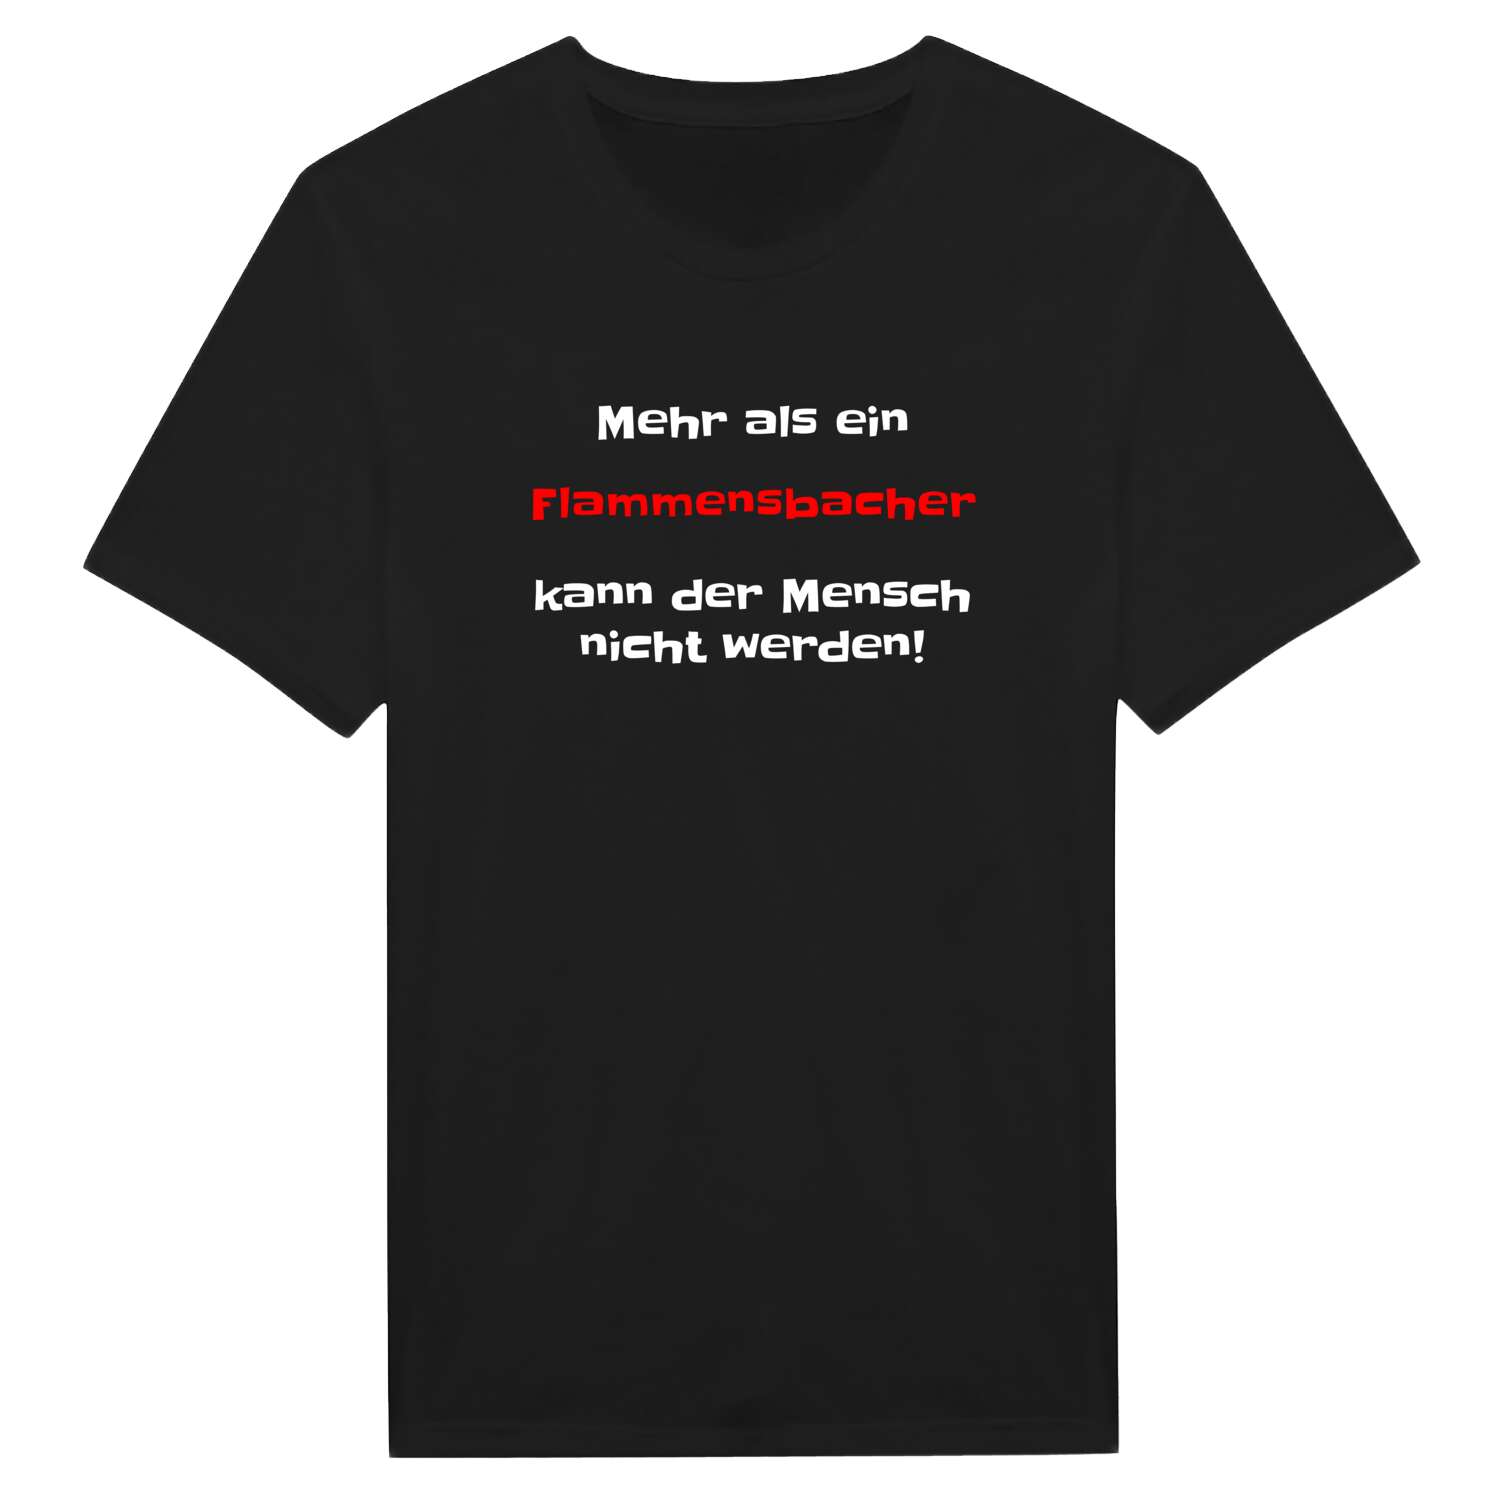 Flammensbach T-Shirt »Mehr als ein«